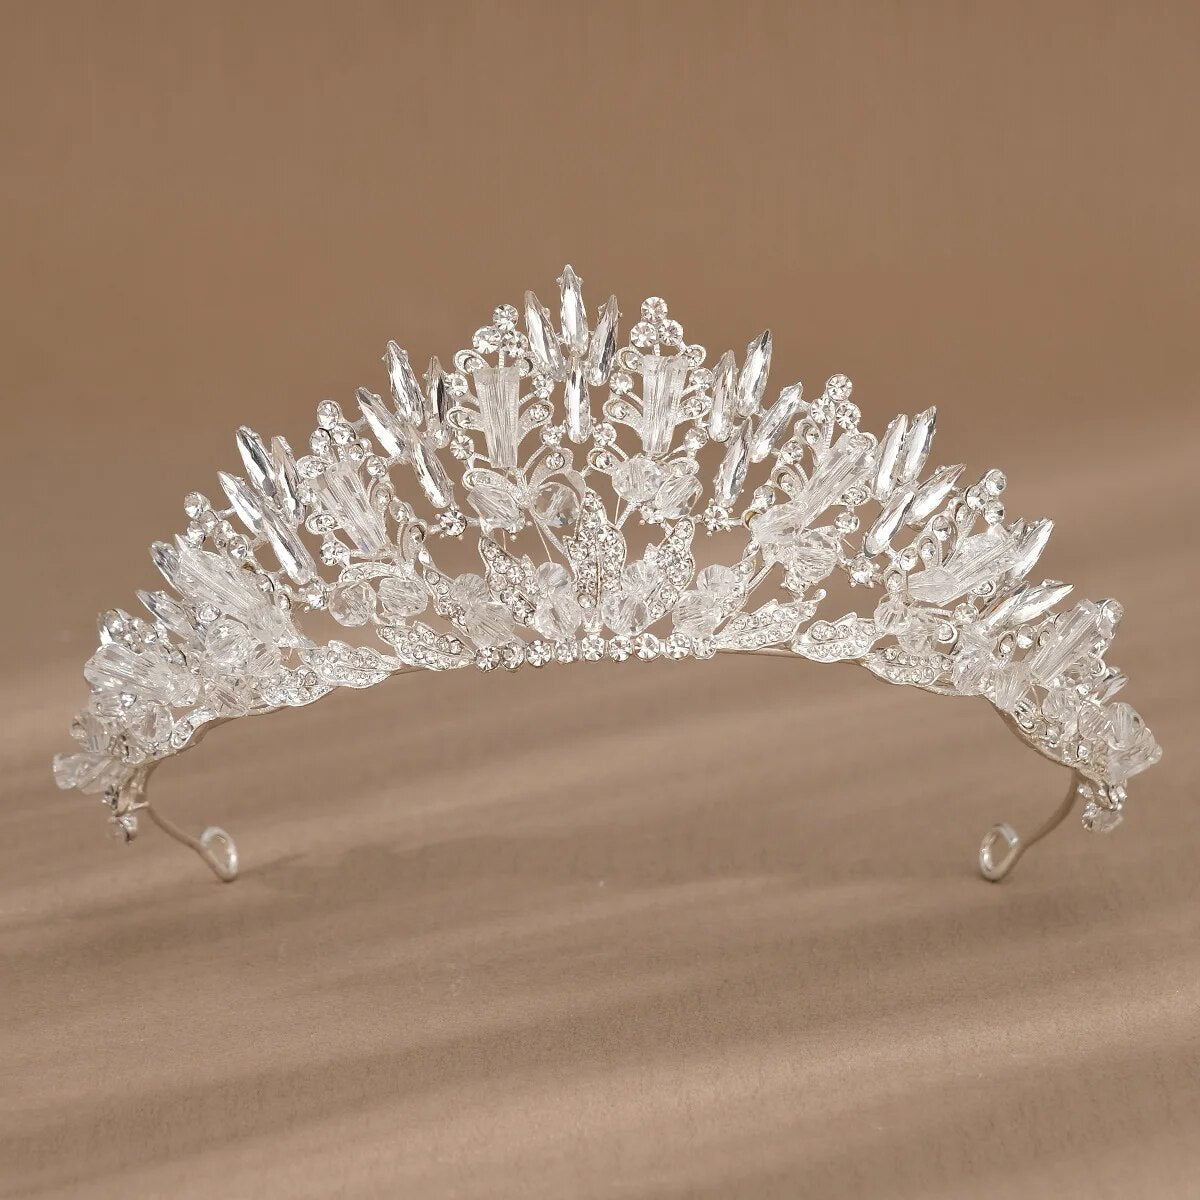 Rhinestone Crystal Prom Wedding Birthday Hair Accessories For Women